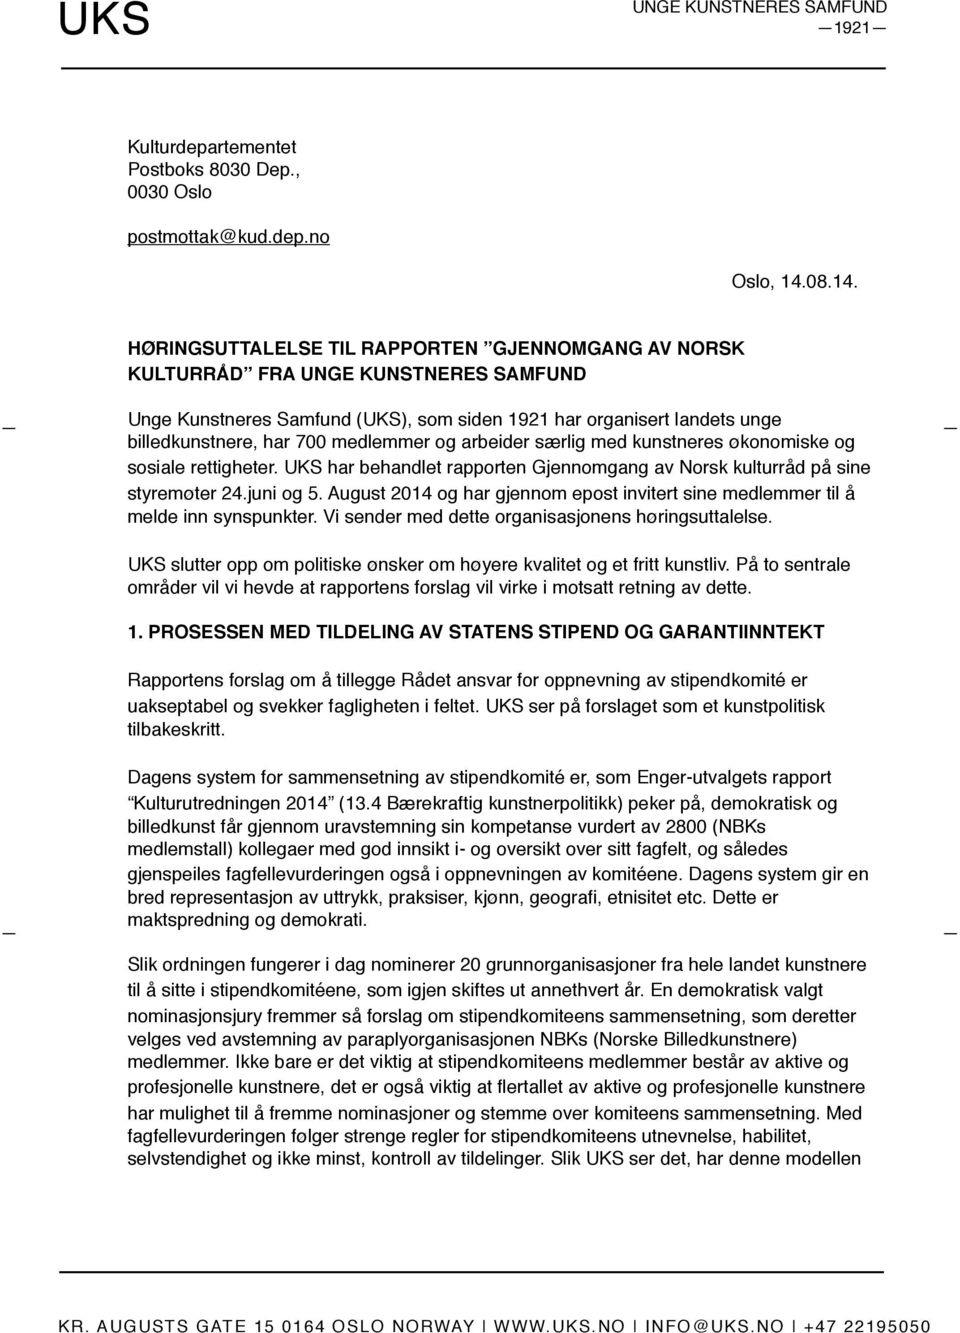 UKS har behandlet rapporten Gjennomgang av Norsk kulturråd på sine styremøter 24.juni og 5. August 2014 og har gjennom epost invitert sine medlemmer til å melde inn synspunkter.